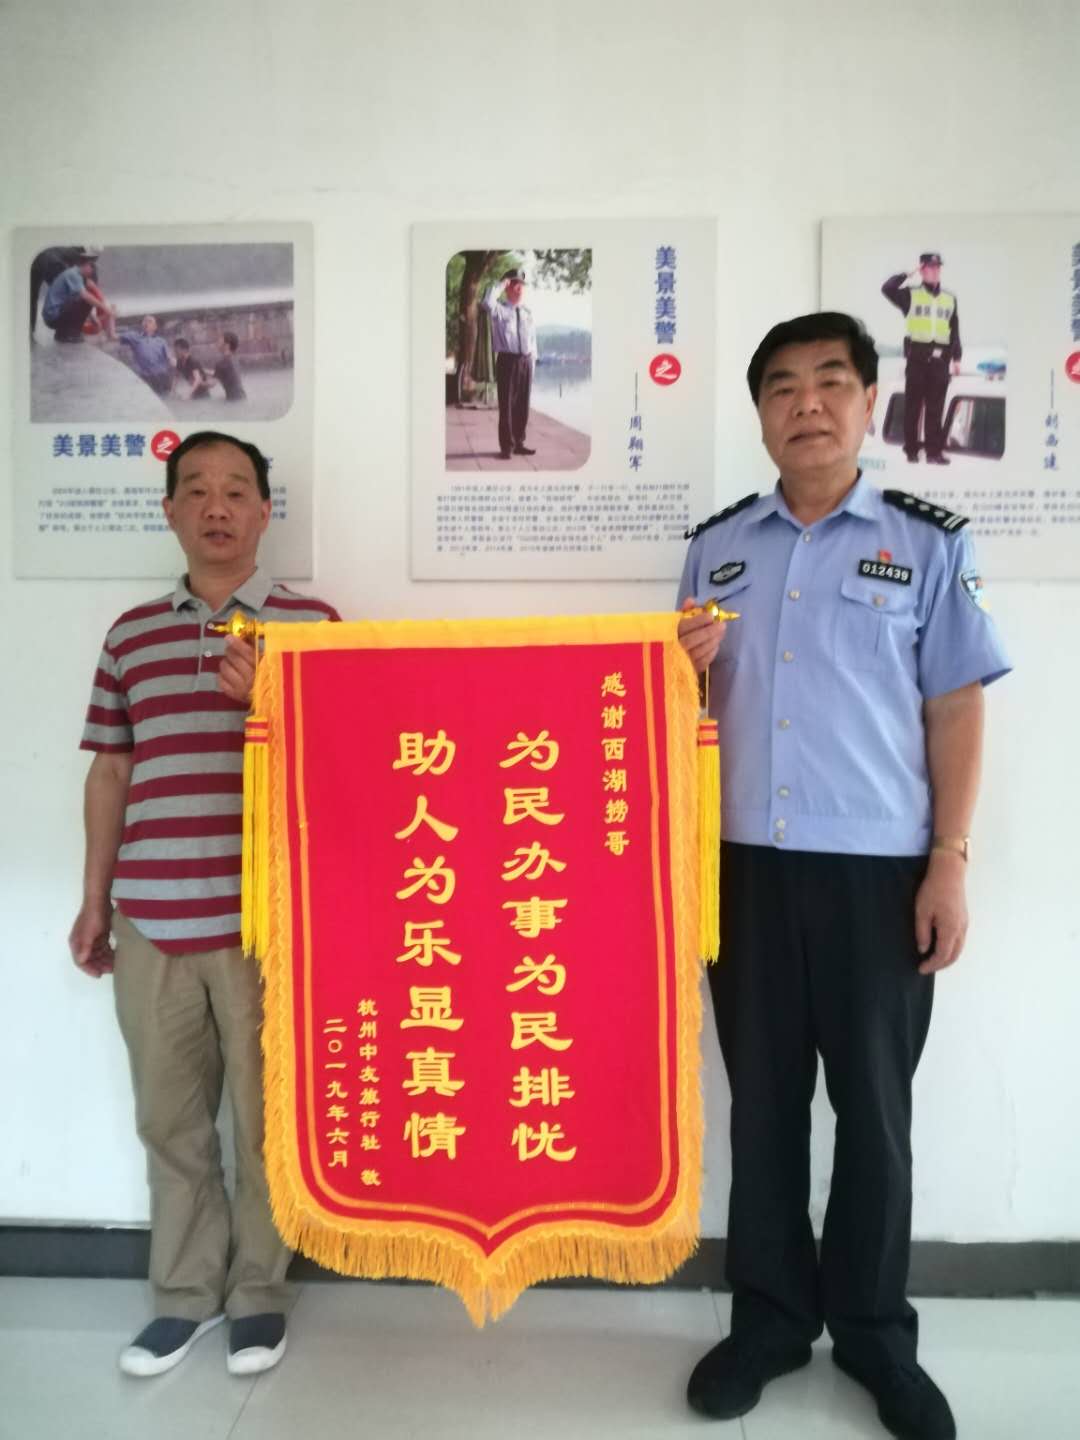 周翔军（右）帮助游客打捞手机，游客送来锦旗表示感谢。  受访者供图